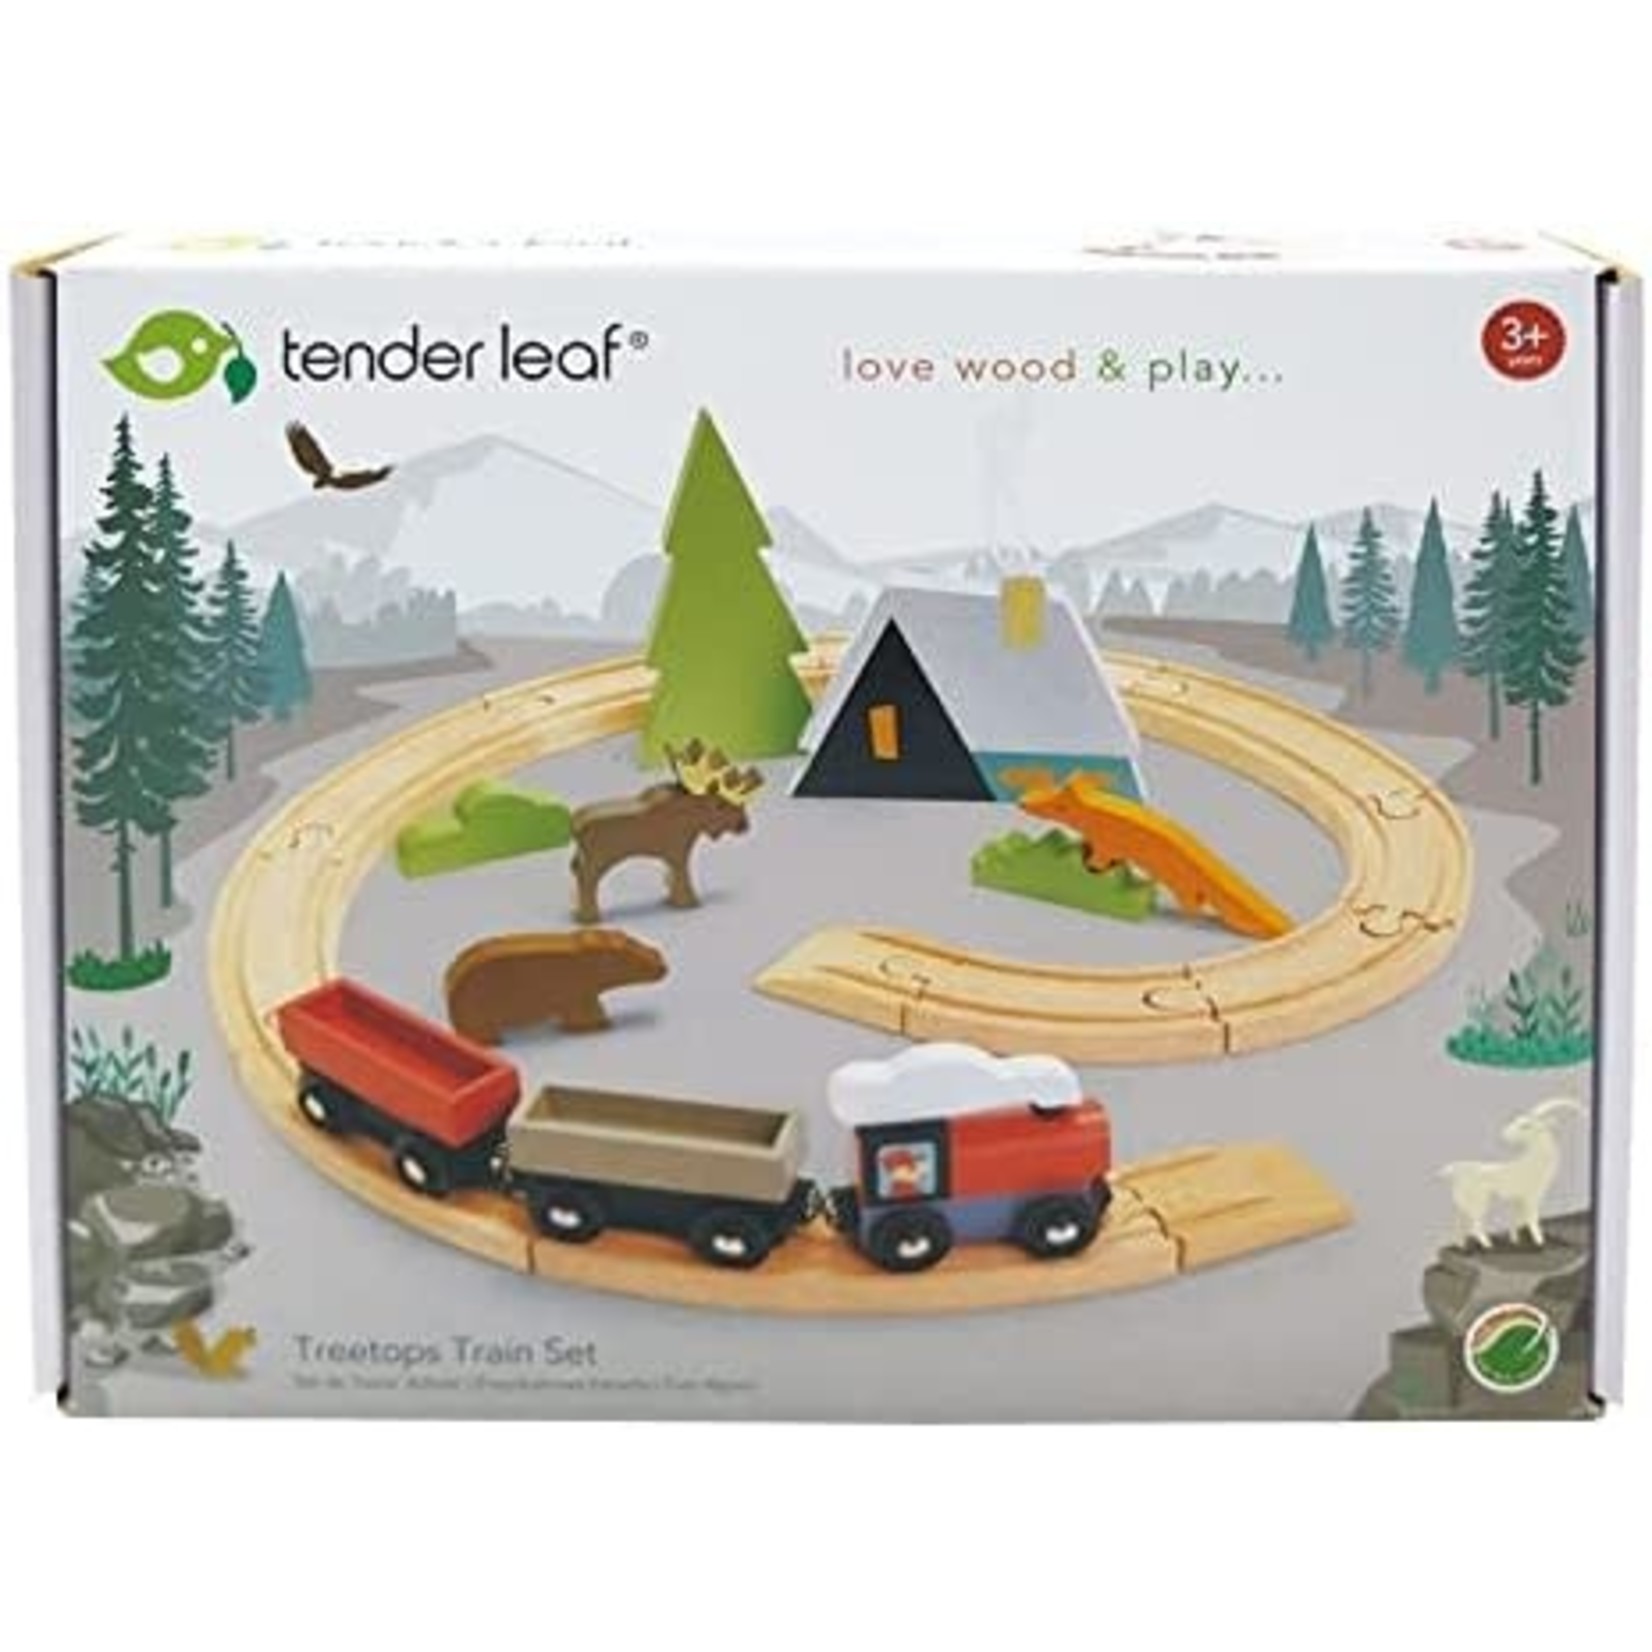 tender leaf toys treetop train set